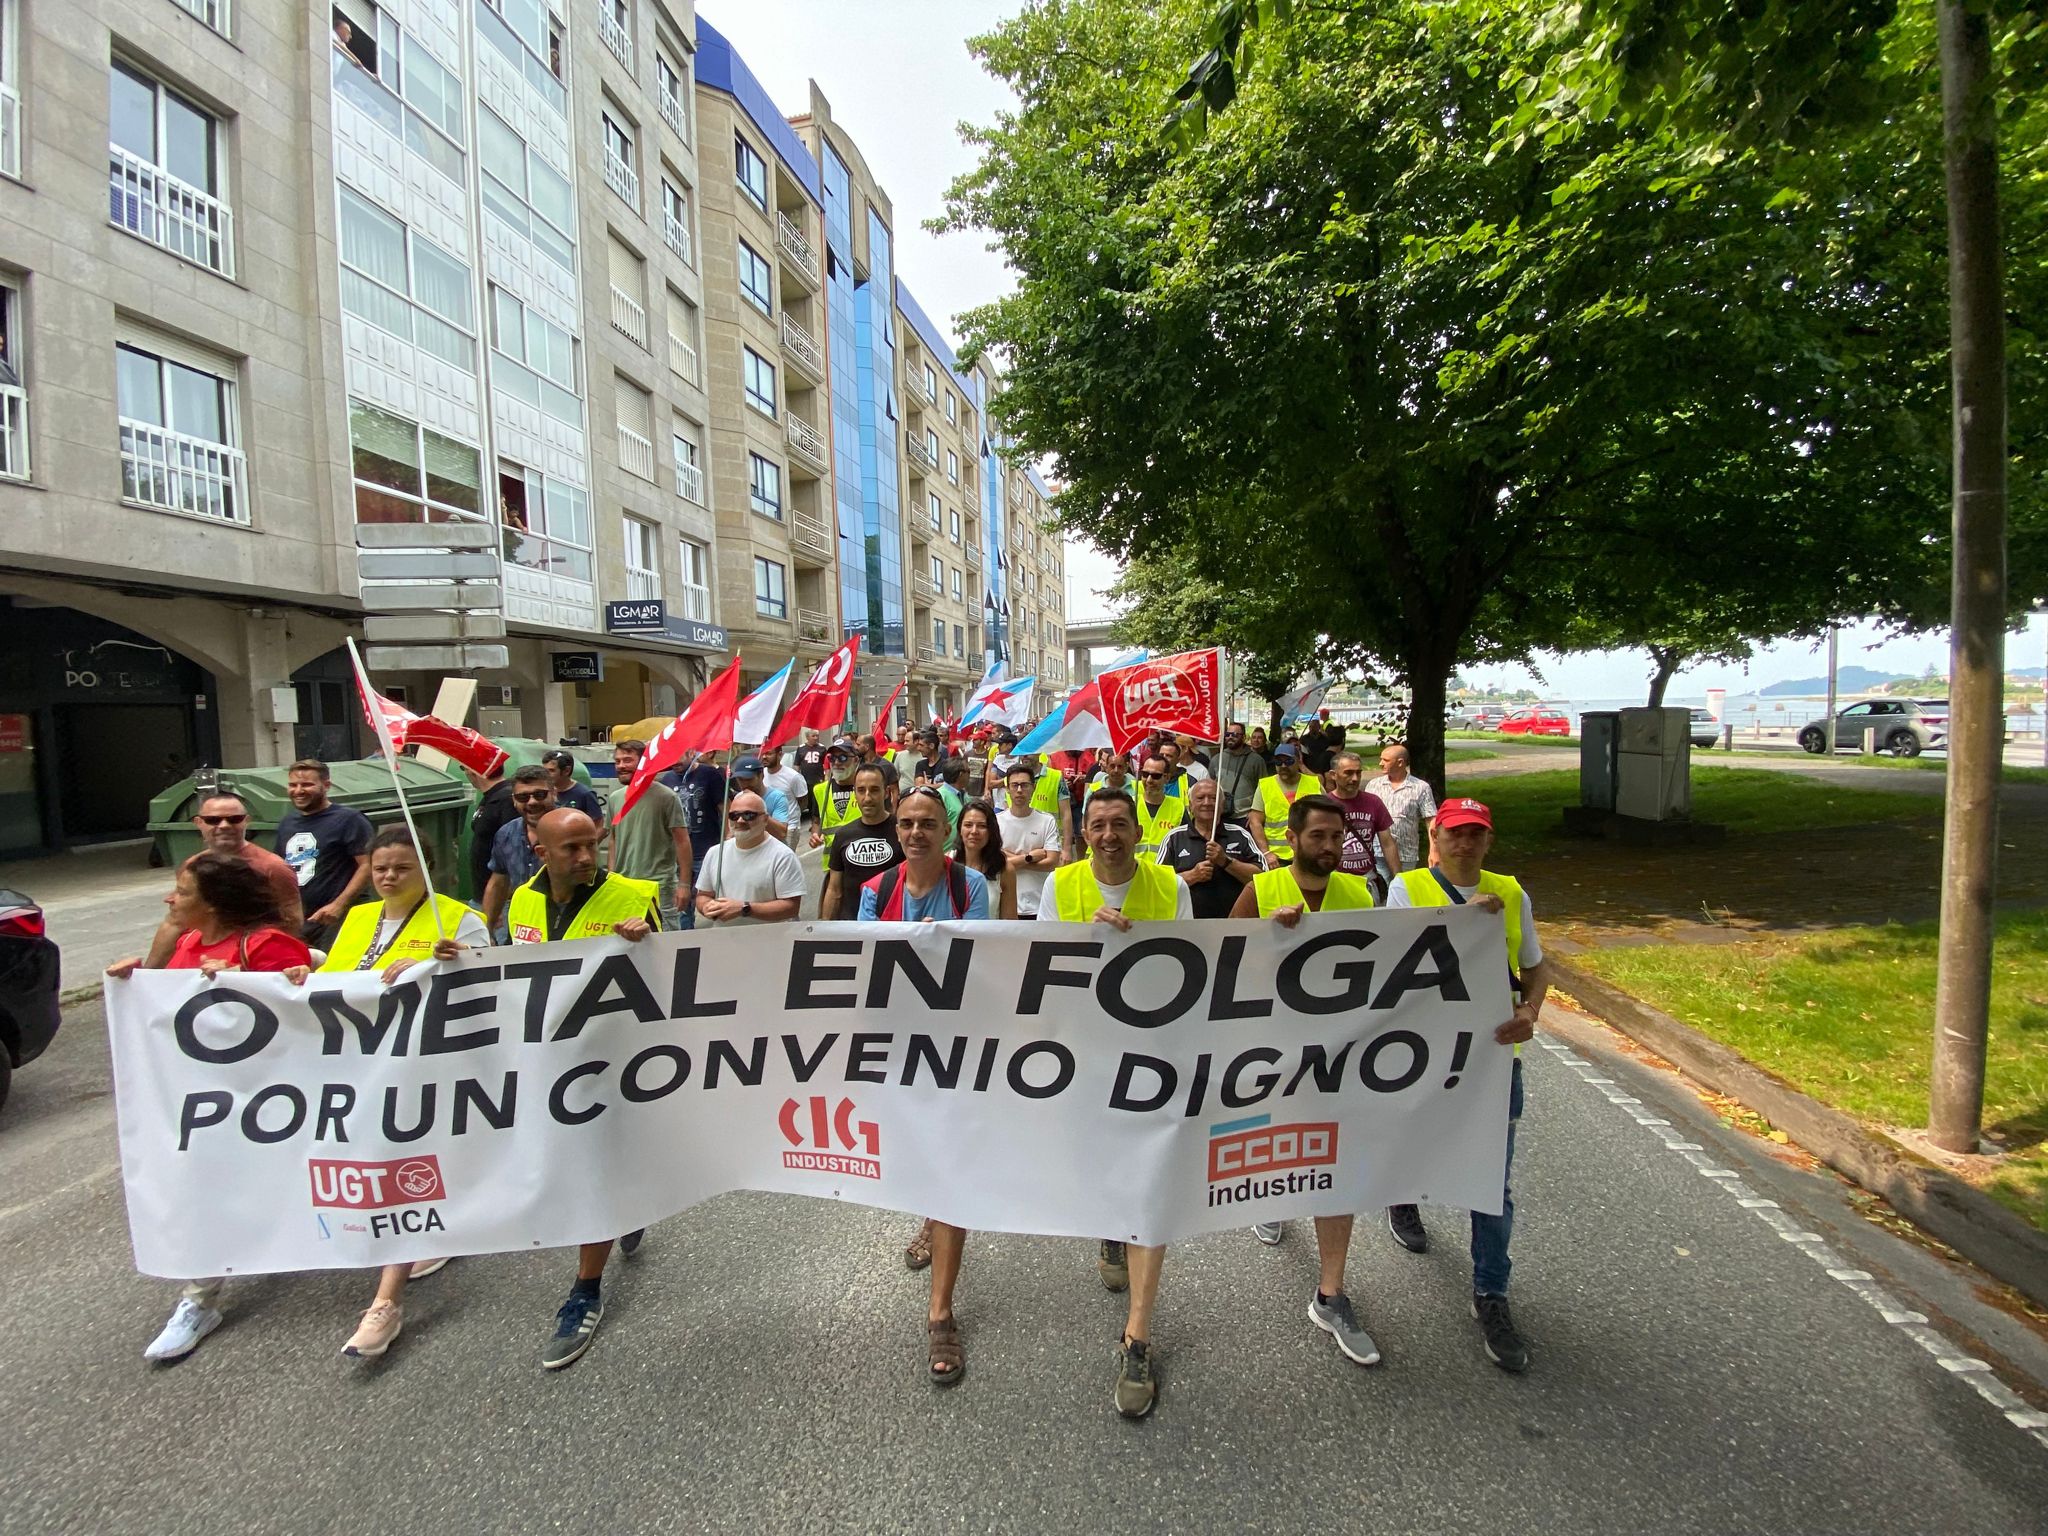 Quarto dia de greve dos metalúrgicos em Vigo | uma multidão de trabalhadores encheu as ruas